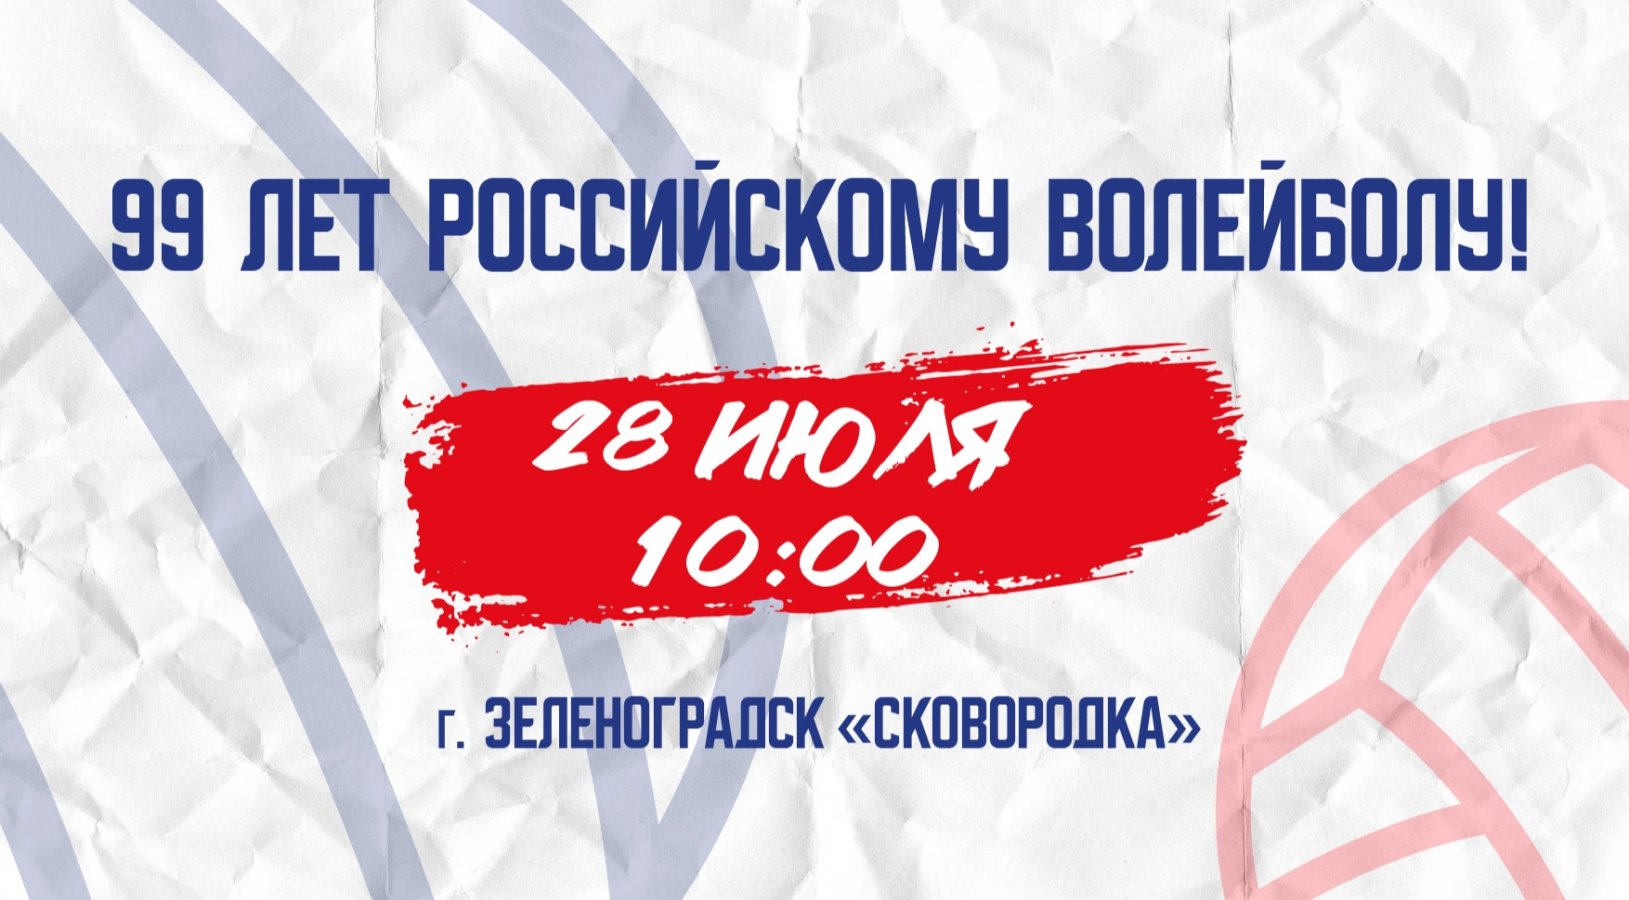 В Калининградской области отметят 99-летие российского волейбола!